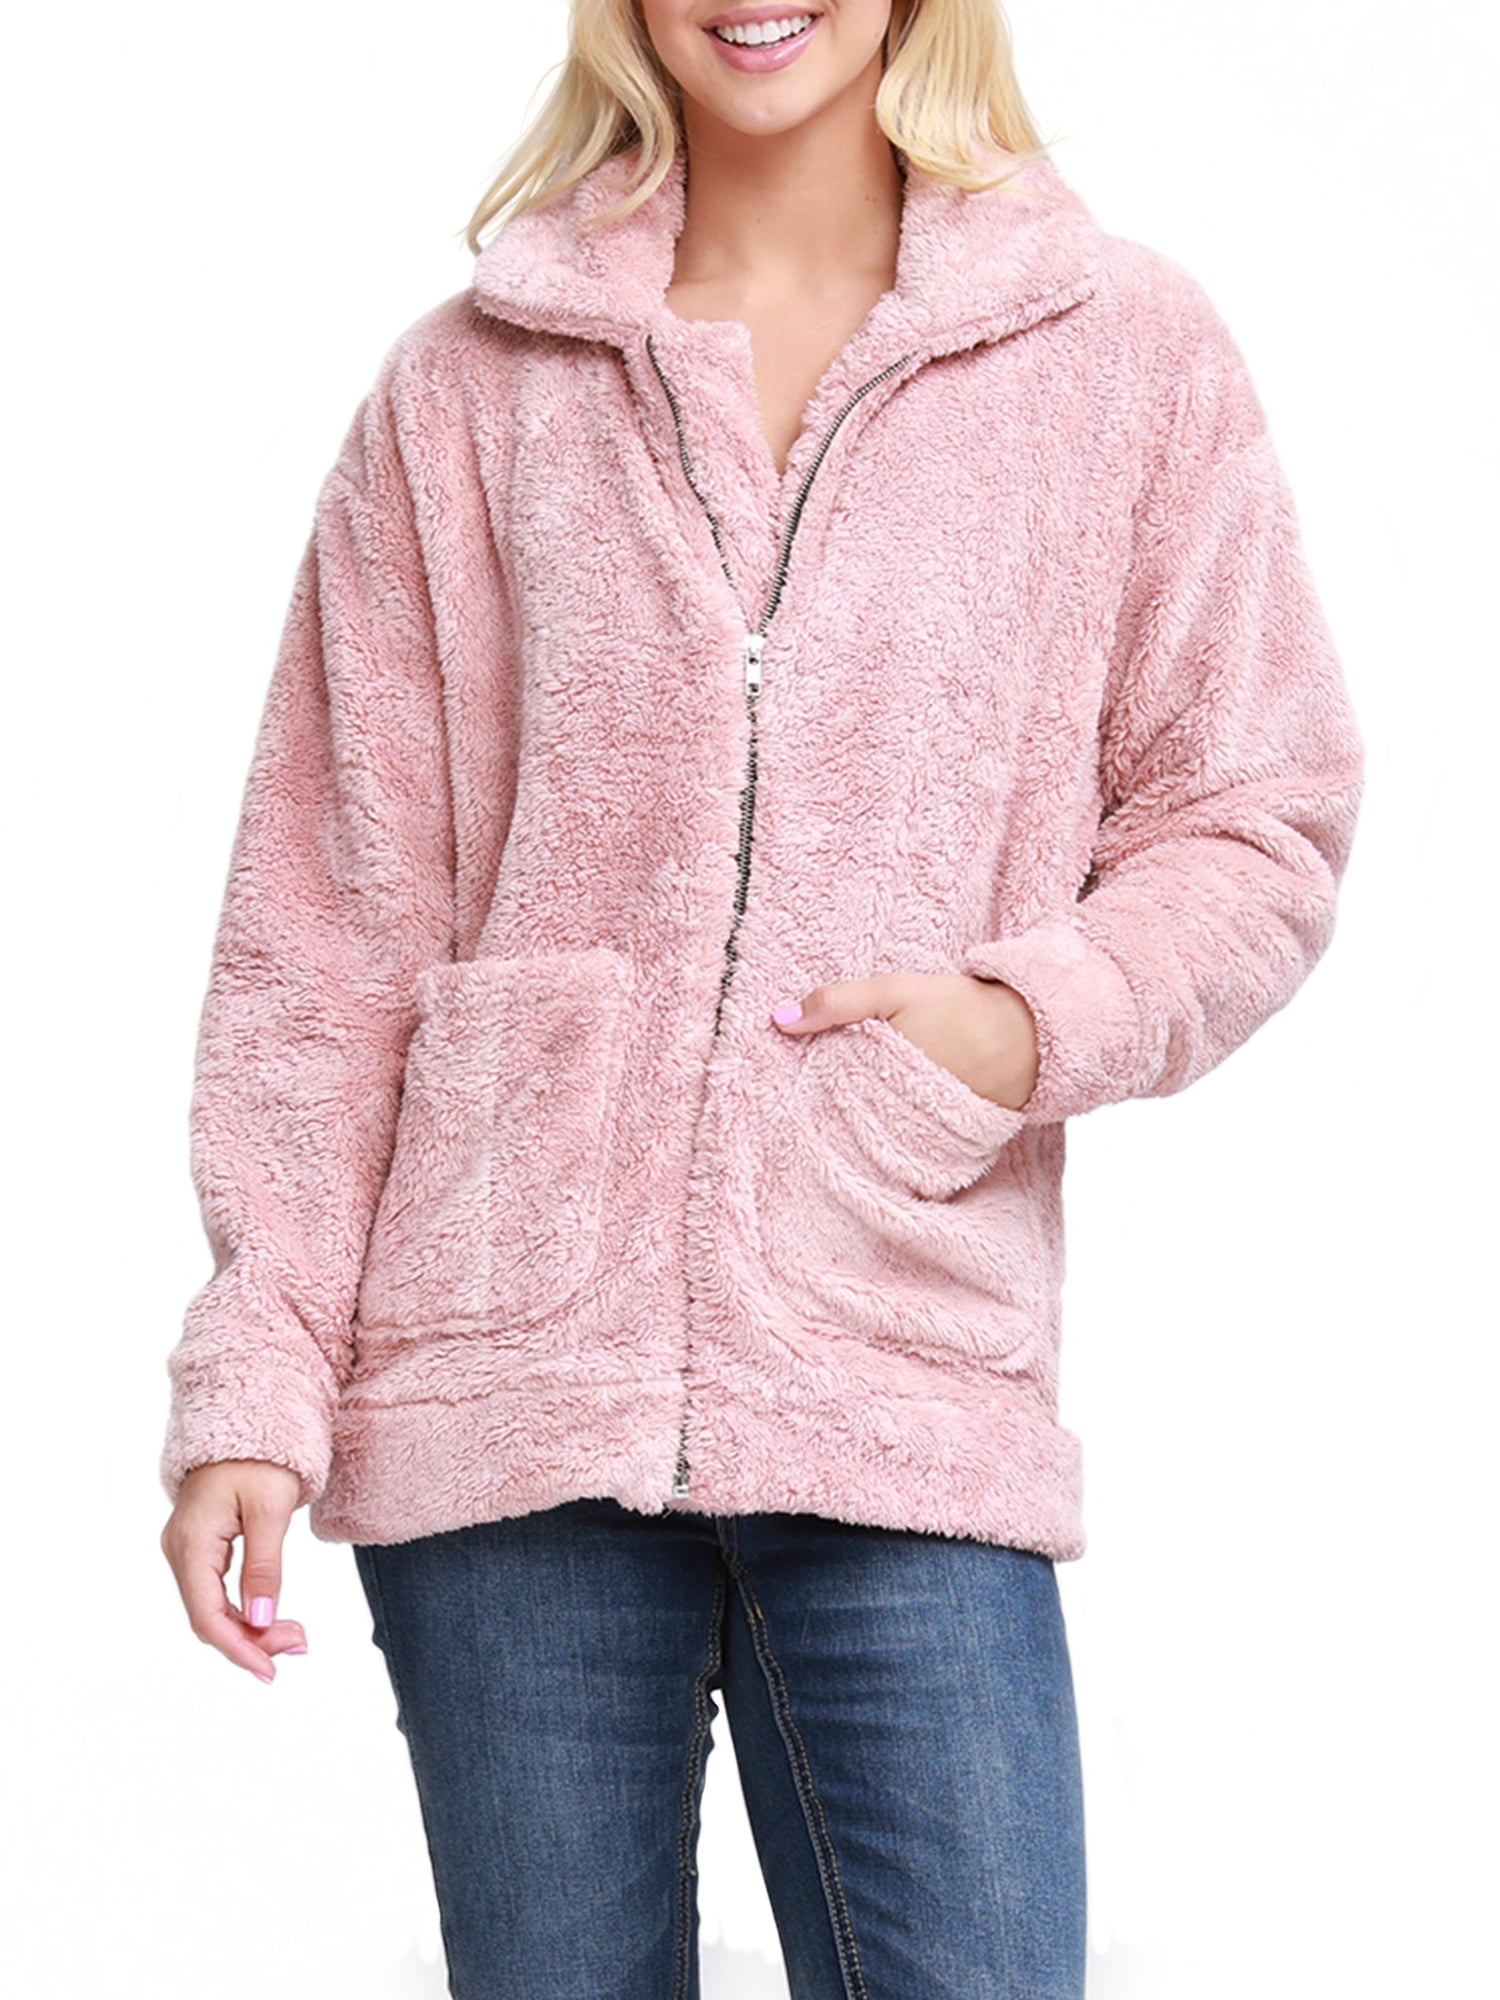 Doublju - Doublju Women's Zip-Up Soft and Warm Sherpa Fur Jacket with ...